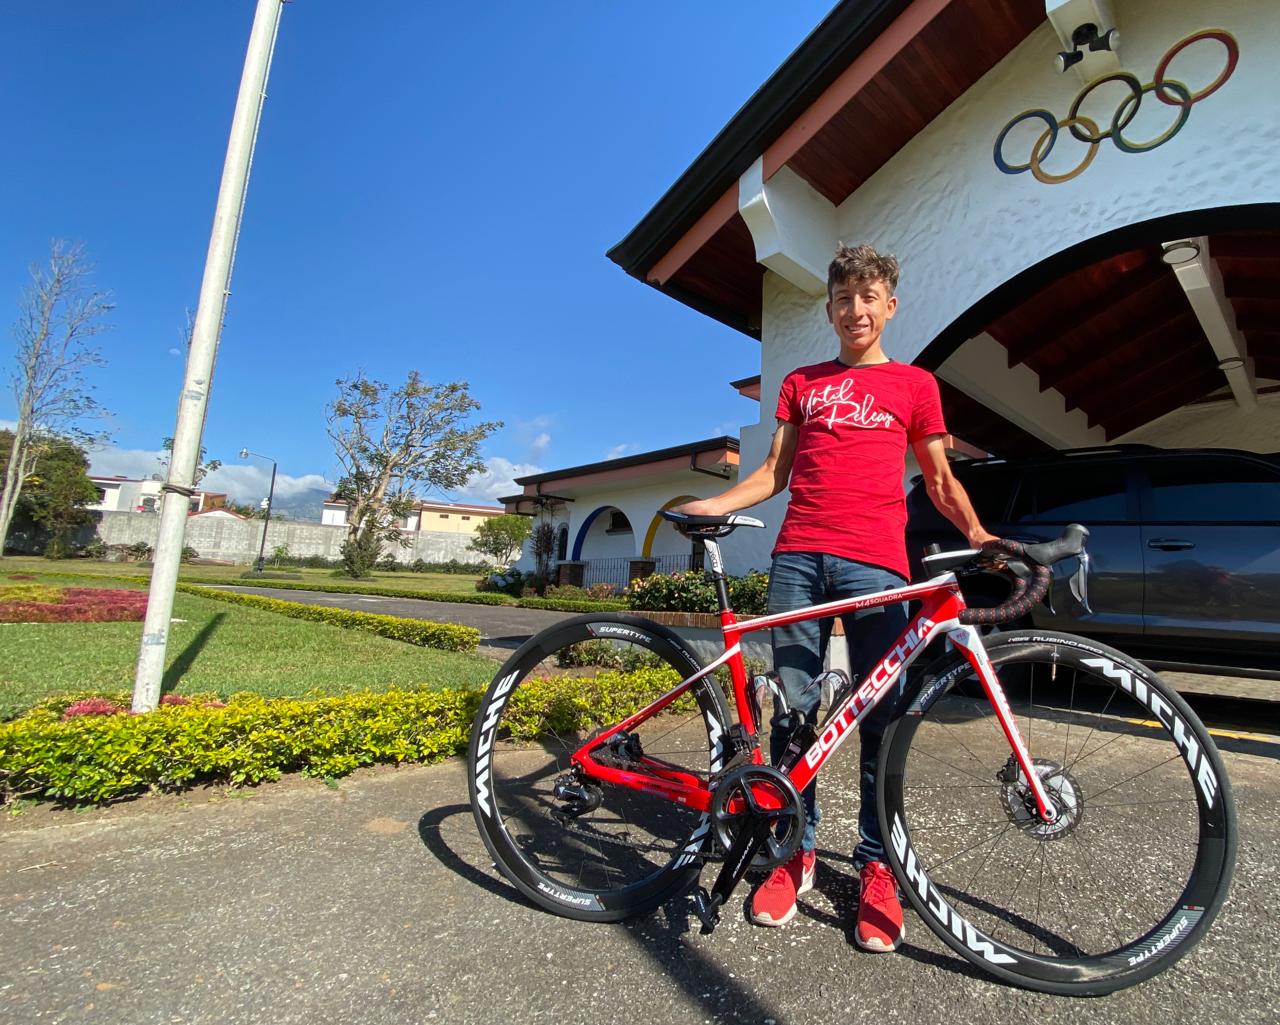 Ciclista tico Kevin Rivera quedó varado en Costa Rica por el coronavirus